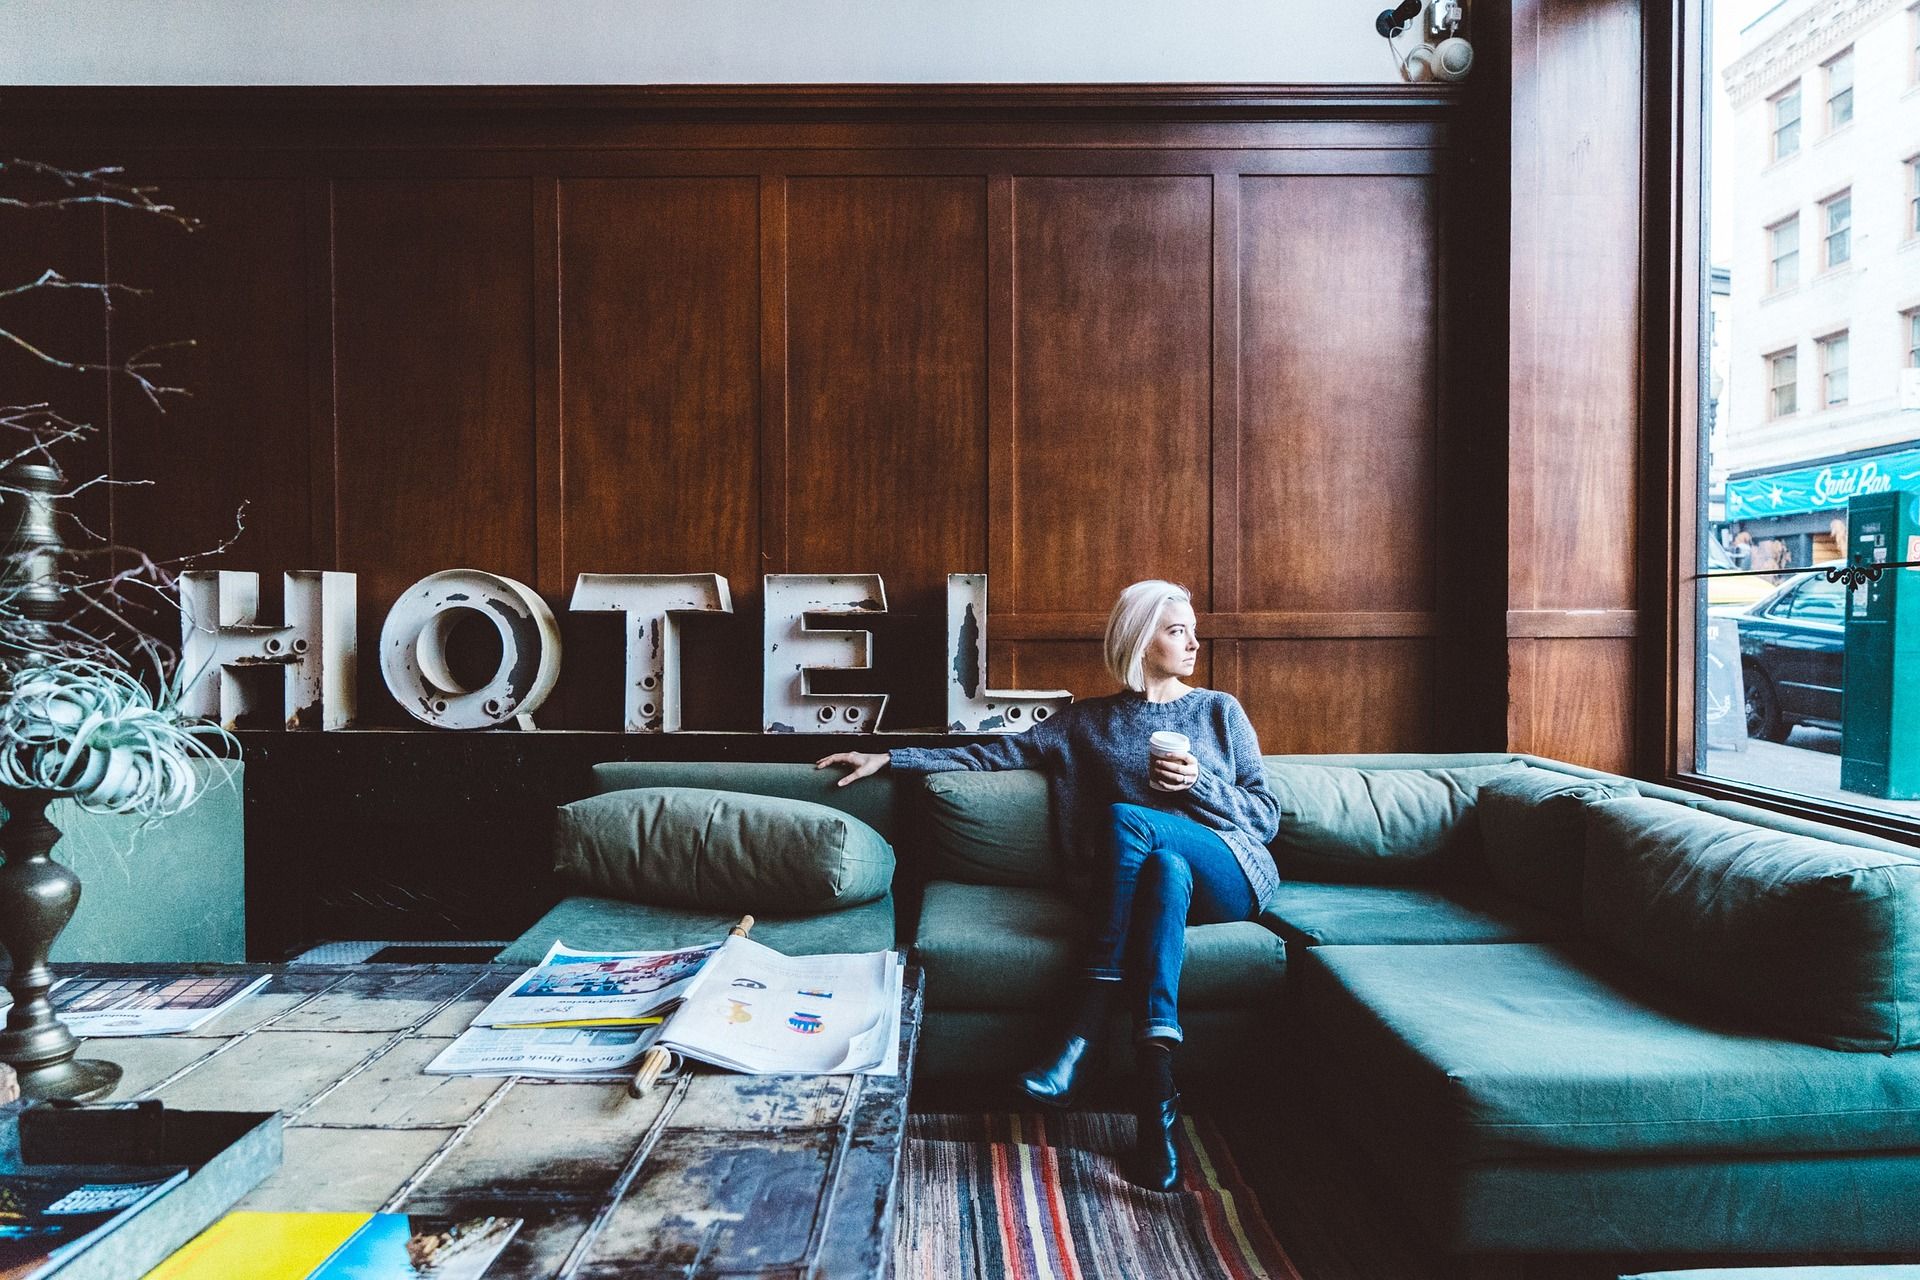 Βαθμολογία από τα καλύτερα φθηνά ξενοδοχεία στο Ροστόφ Ον Ντον το 2020